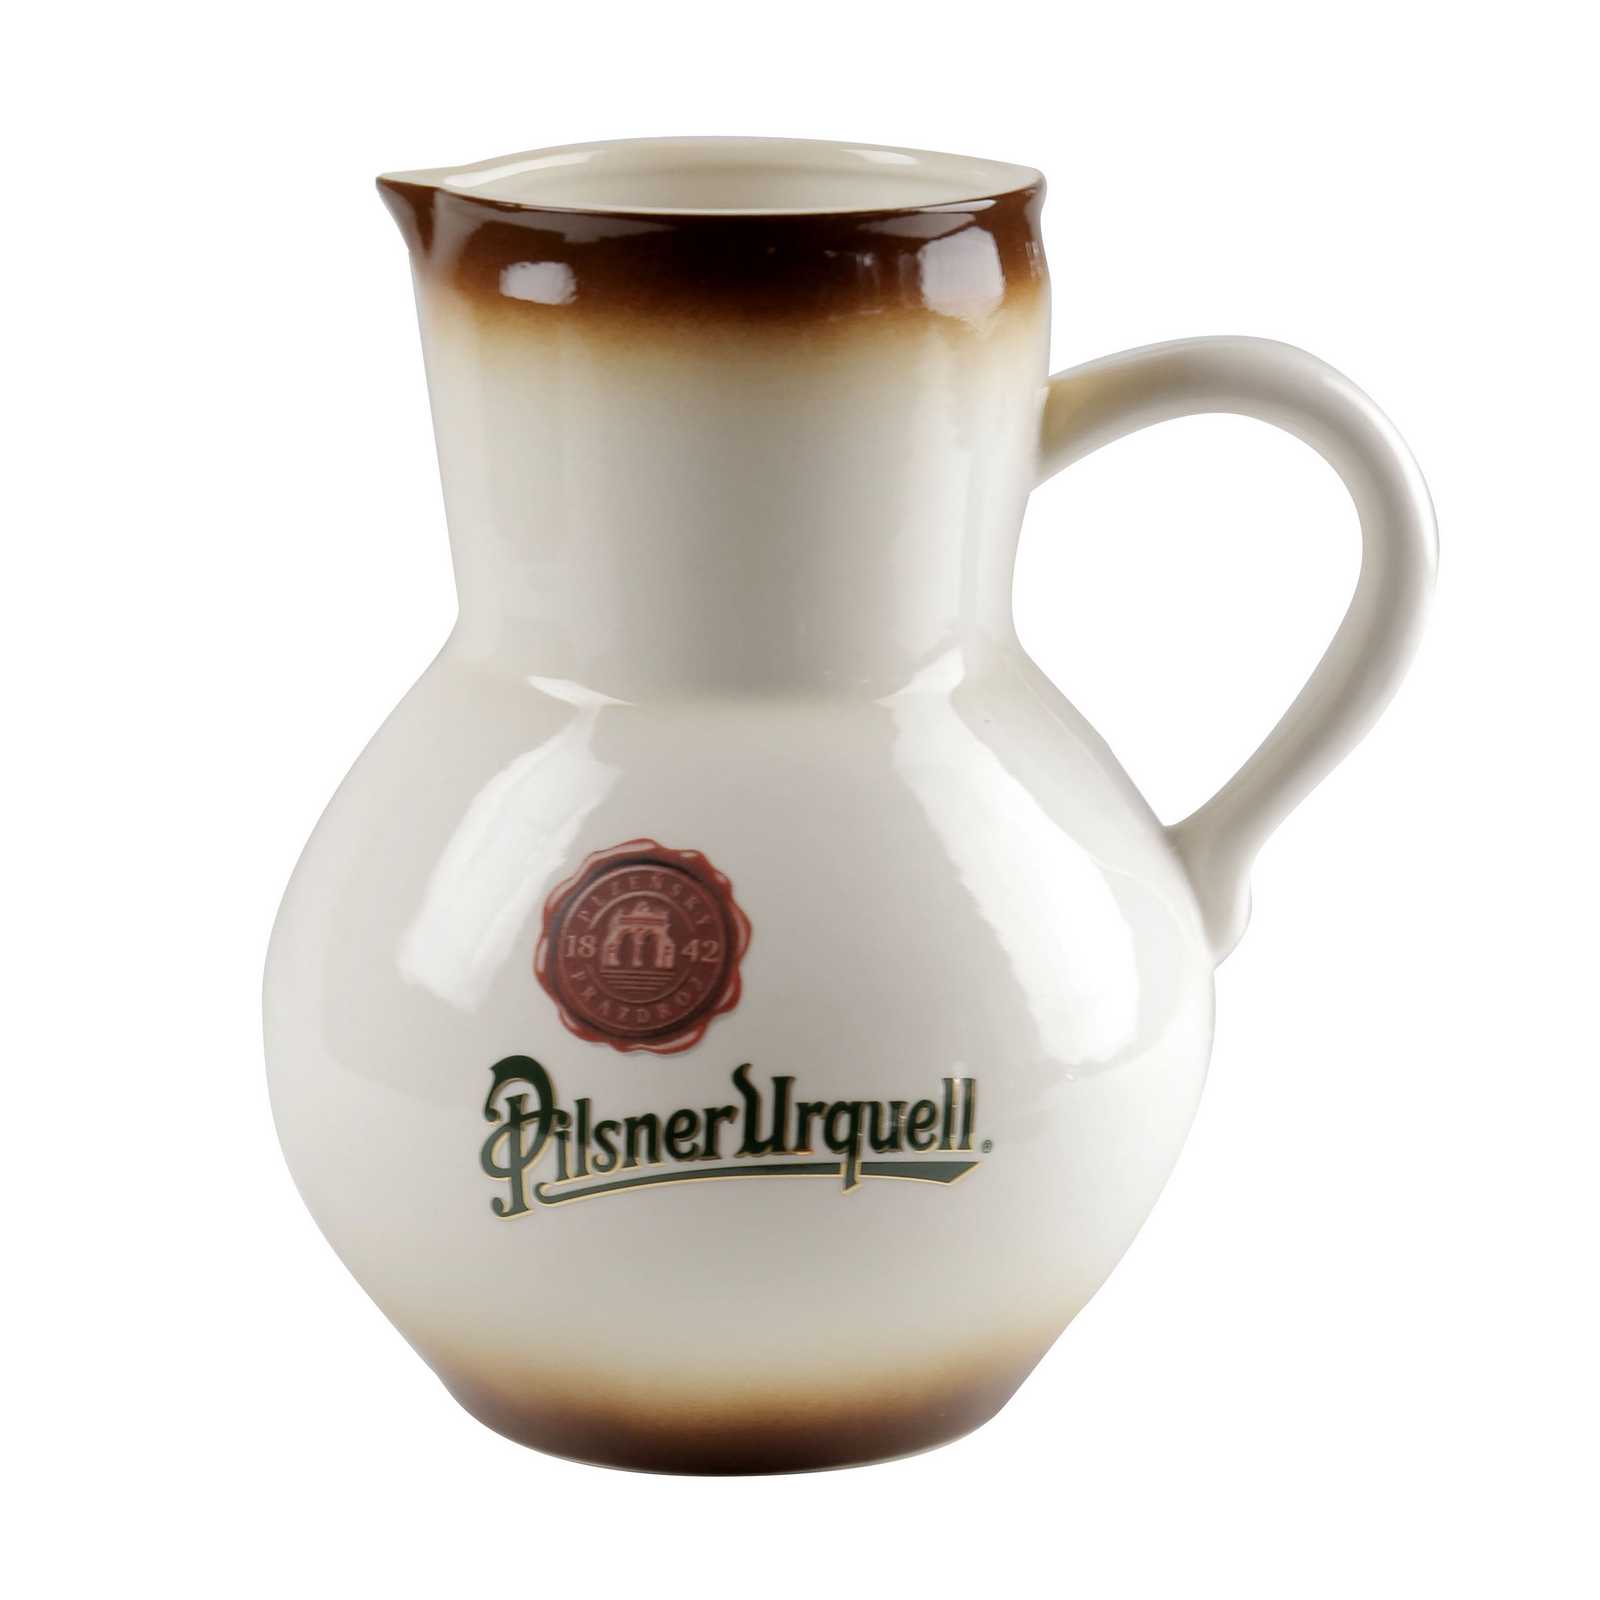 1 l Pilsner Urquell beer pitcher